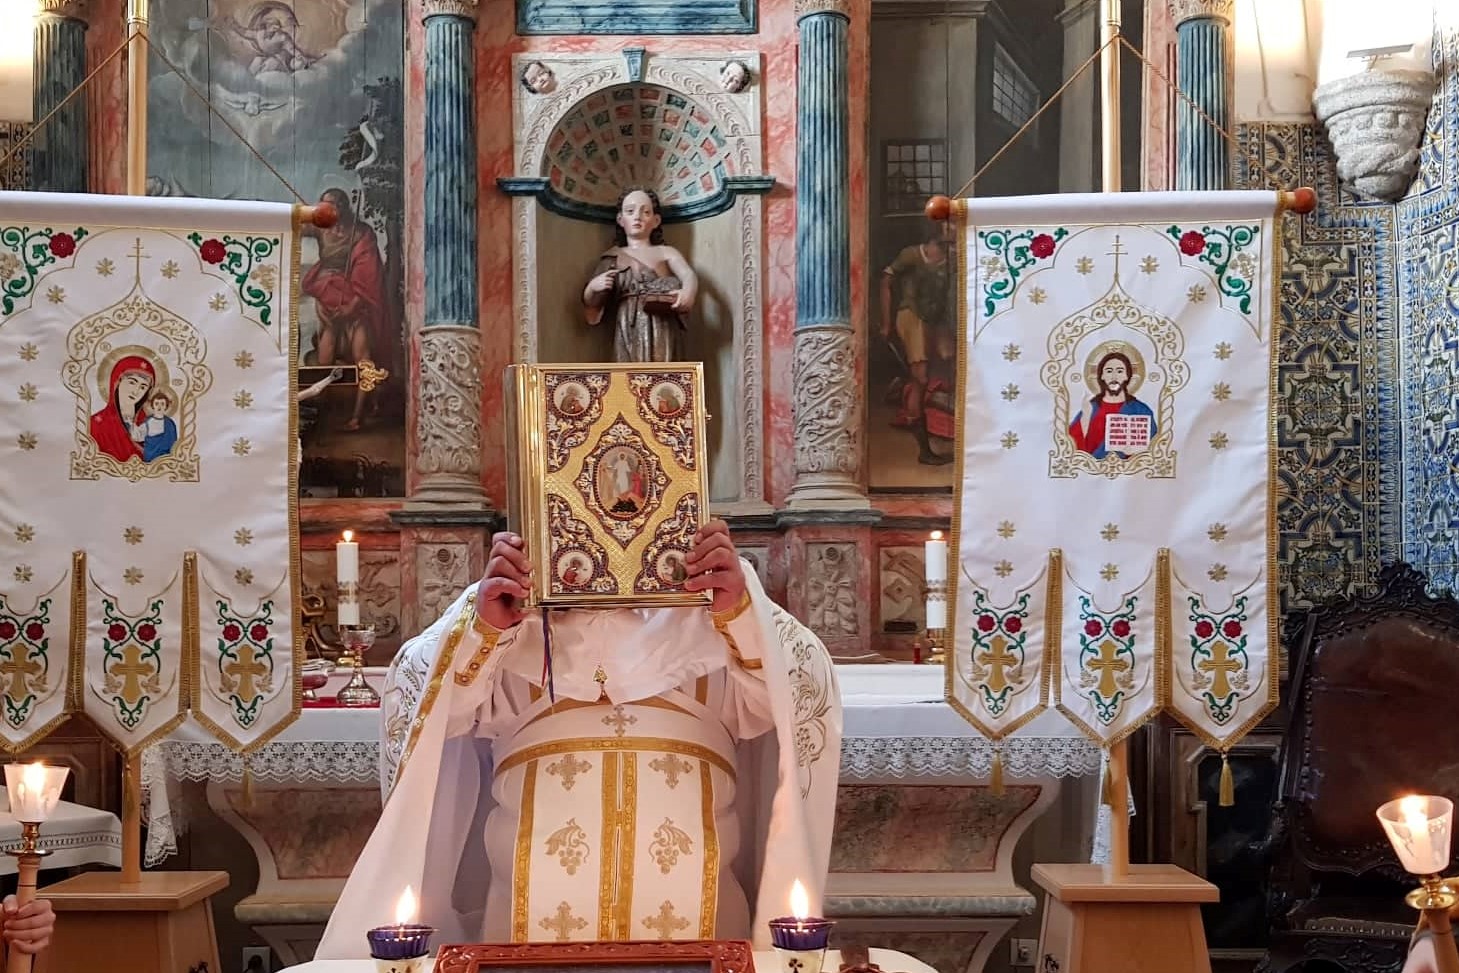 Igreja: Católicos de Rito Bizantino e ortodoxos celebram alegria de Natal,  apesar das limitações - Agência ECCLESIA